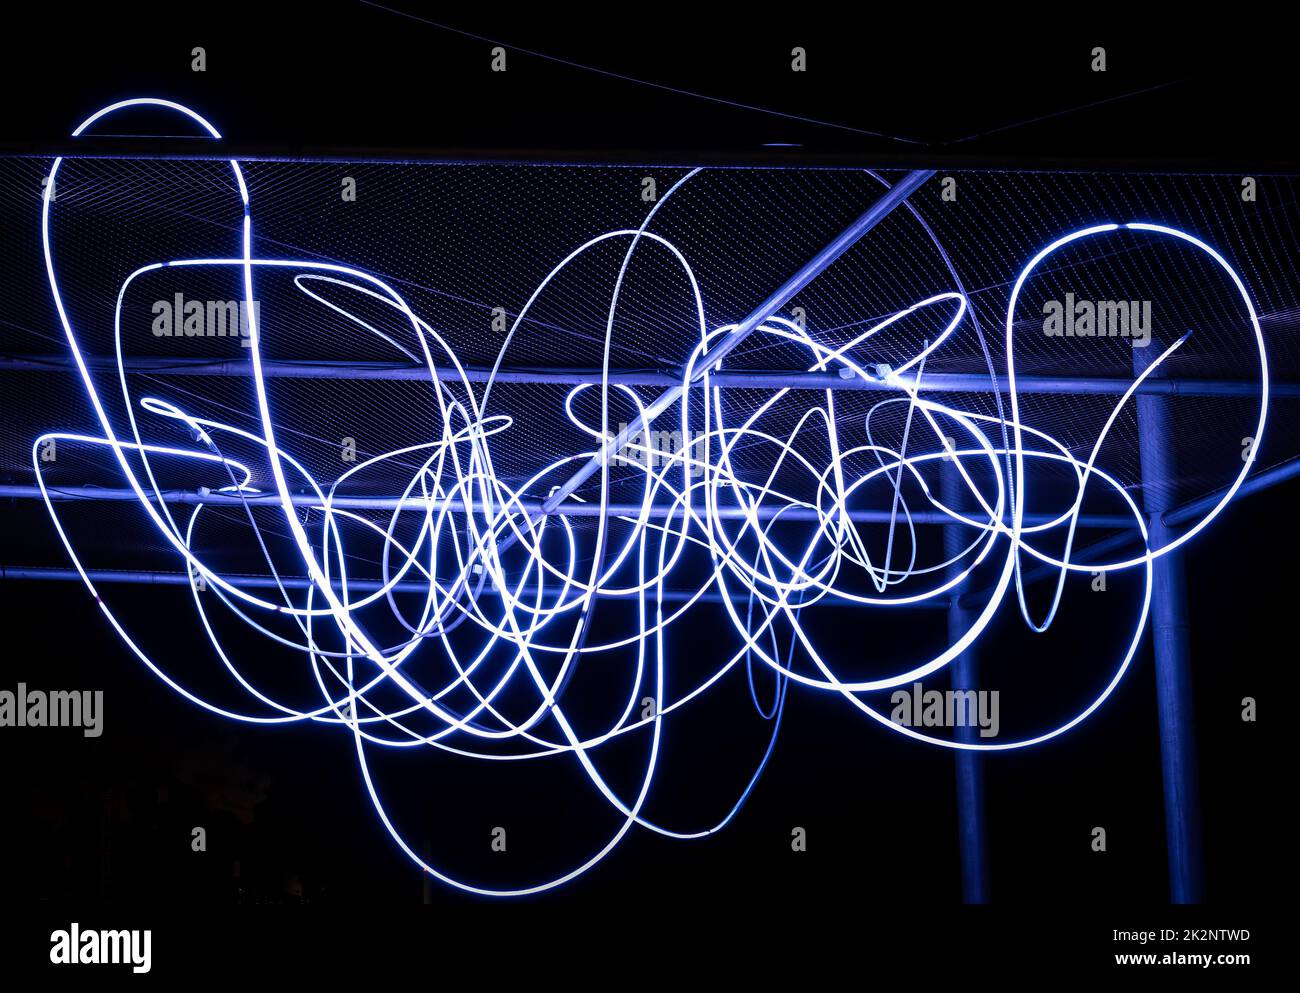 Le flux d'électrons sous forme de faisceaux de lumière spaghetti est allumé en blanc. Un faisceau lumineux de LED blanches indique un flux de particules électriques ou des photons lumineux Banque D'Images